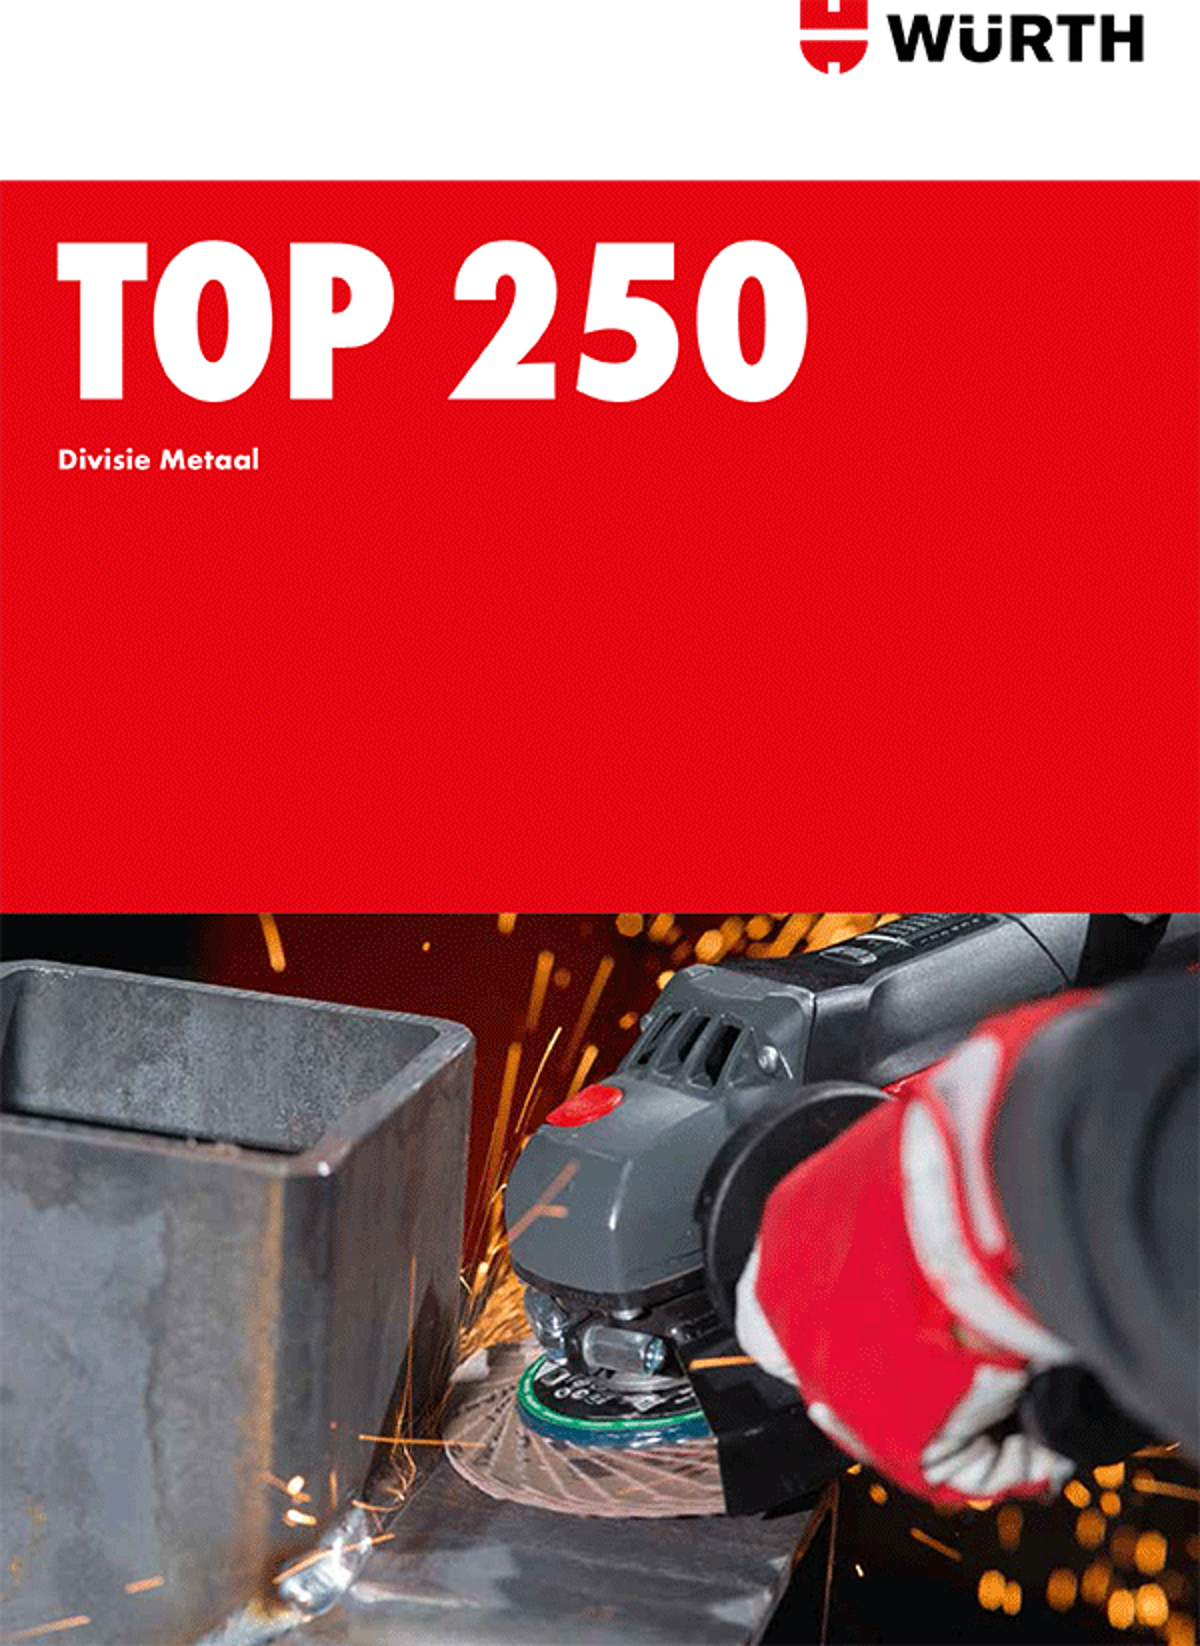 Top 250 Metaal